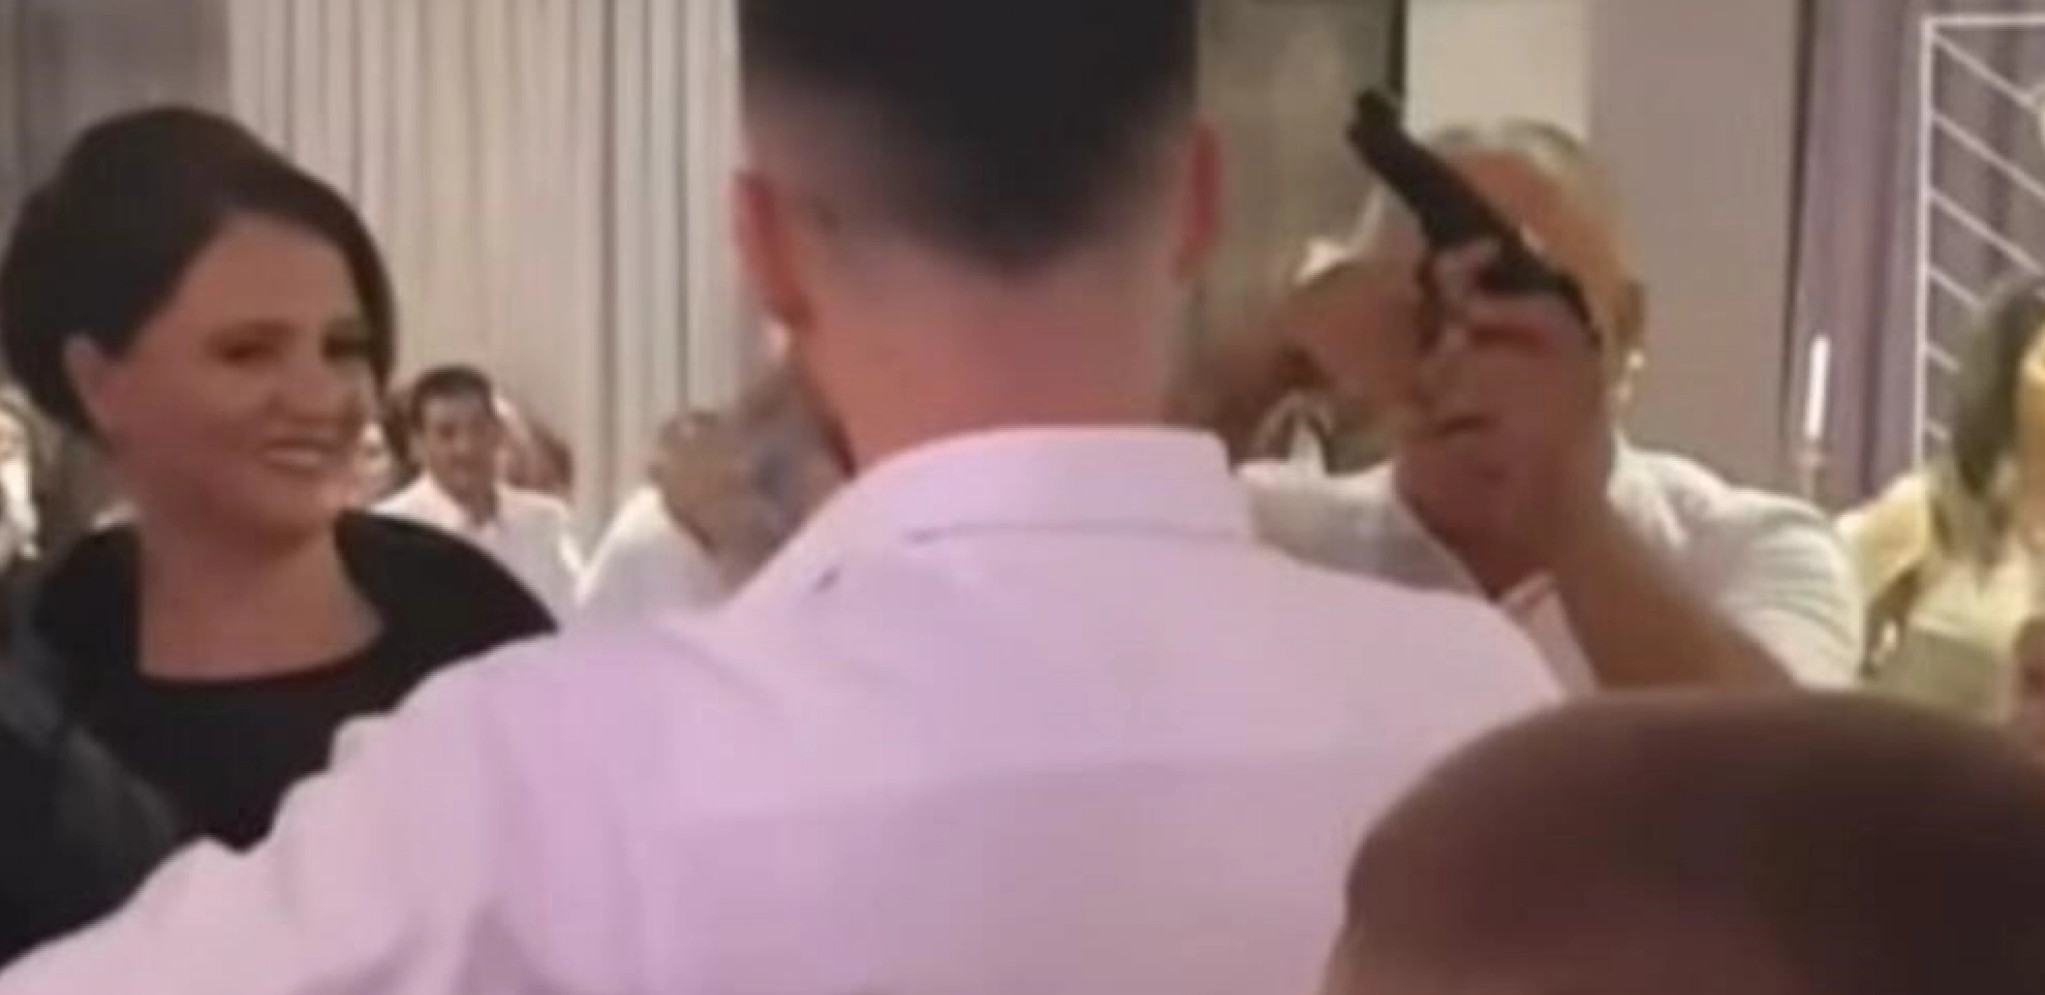 PJEVAČU PUCALI PORED GLAVE Pjevao na svadbi, a onda su izvadili pištolj (VIDEO)